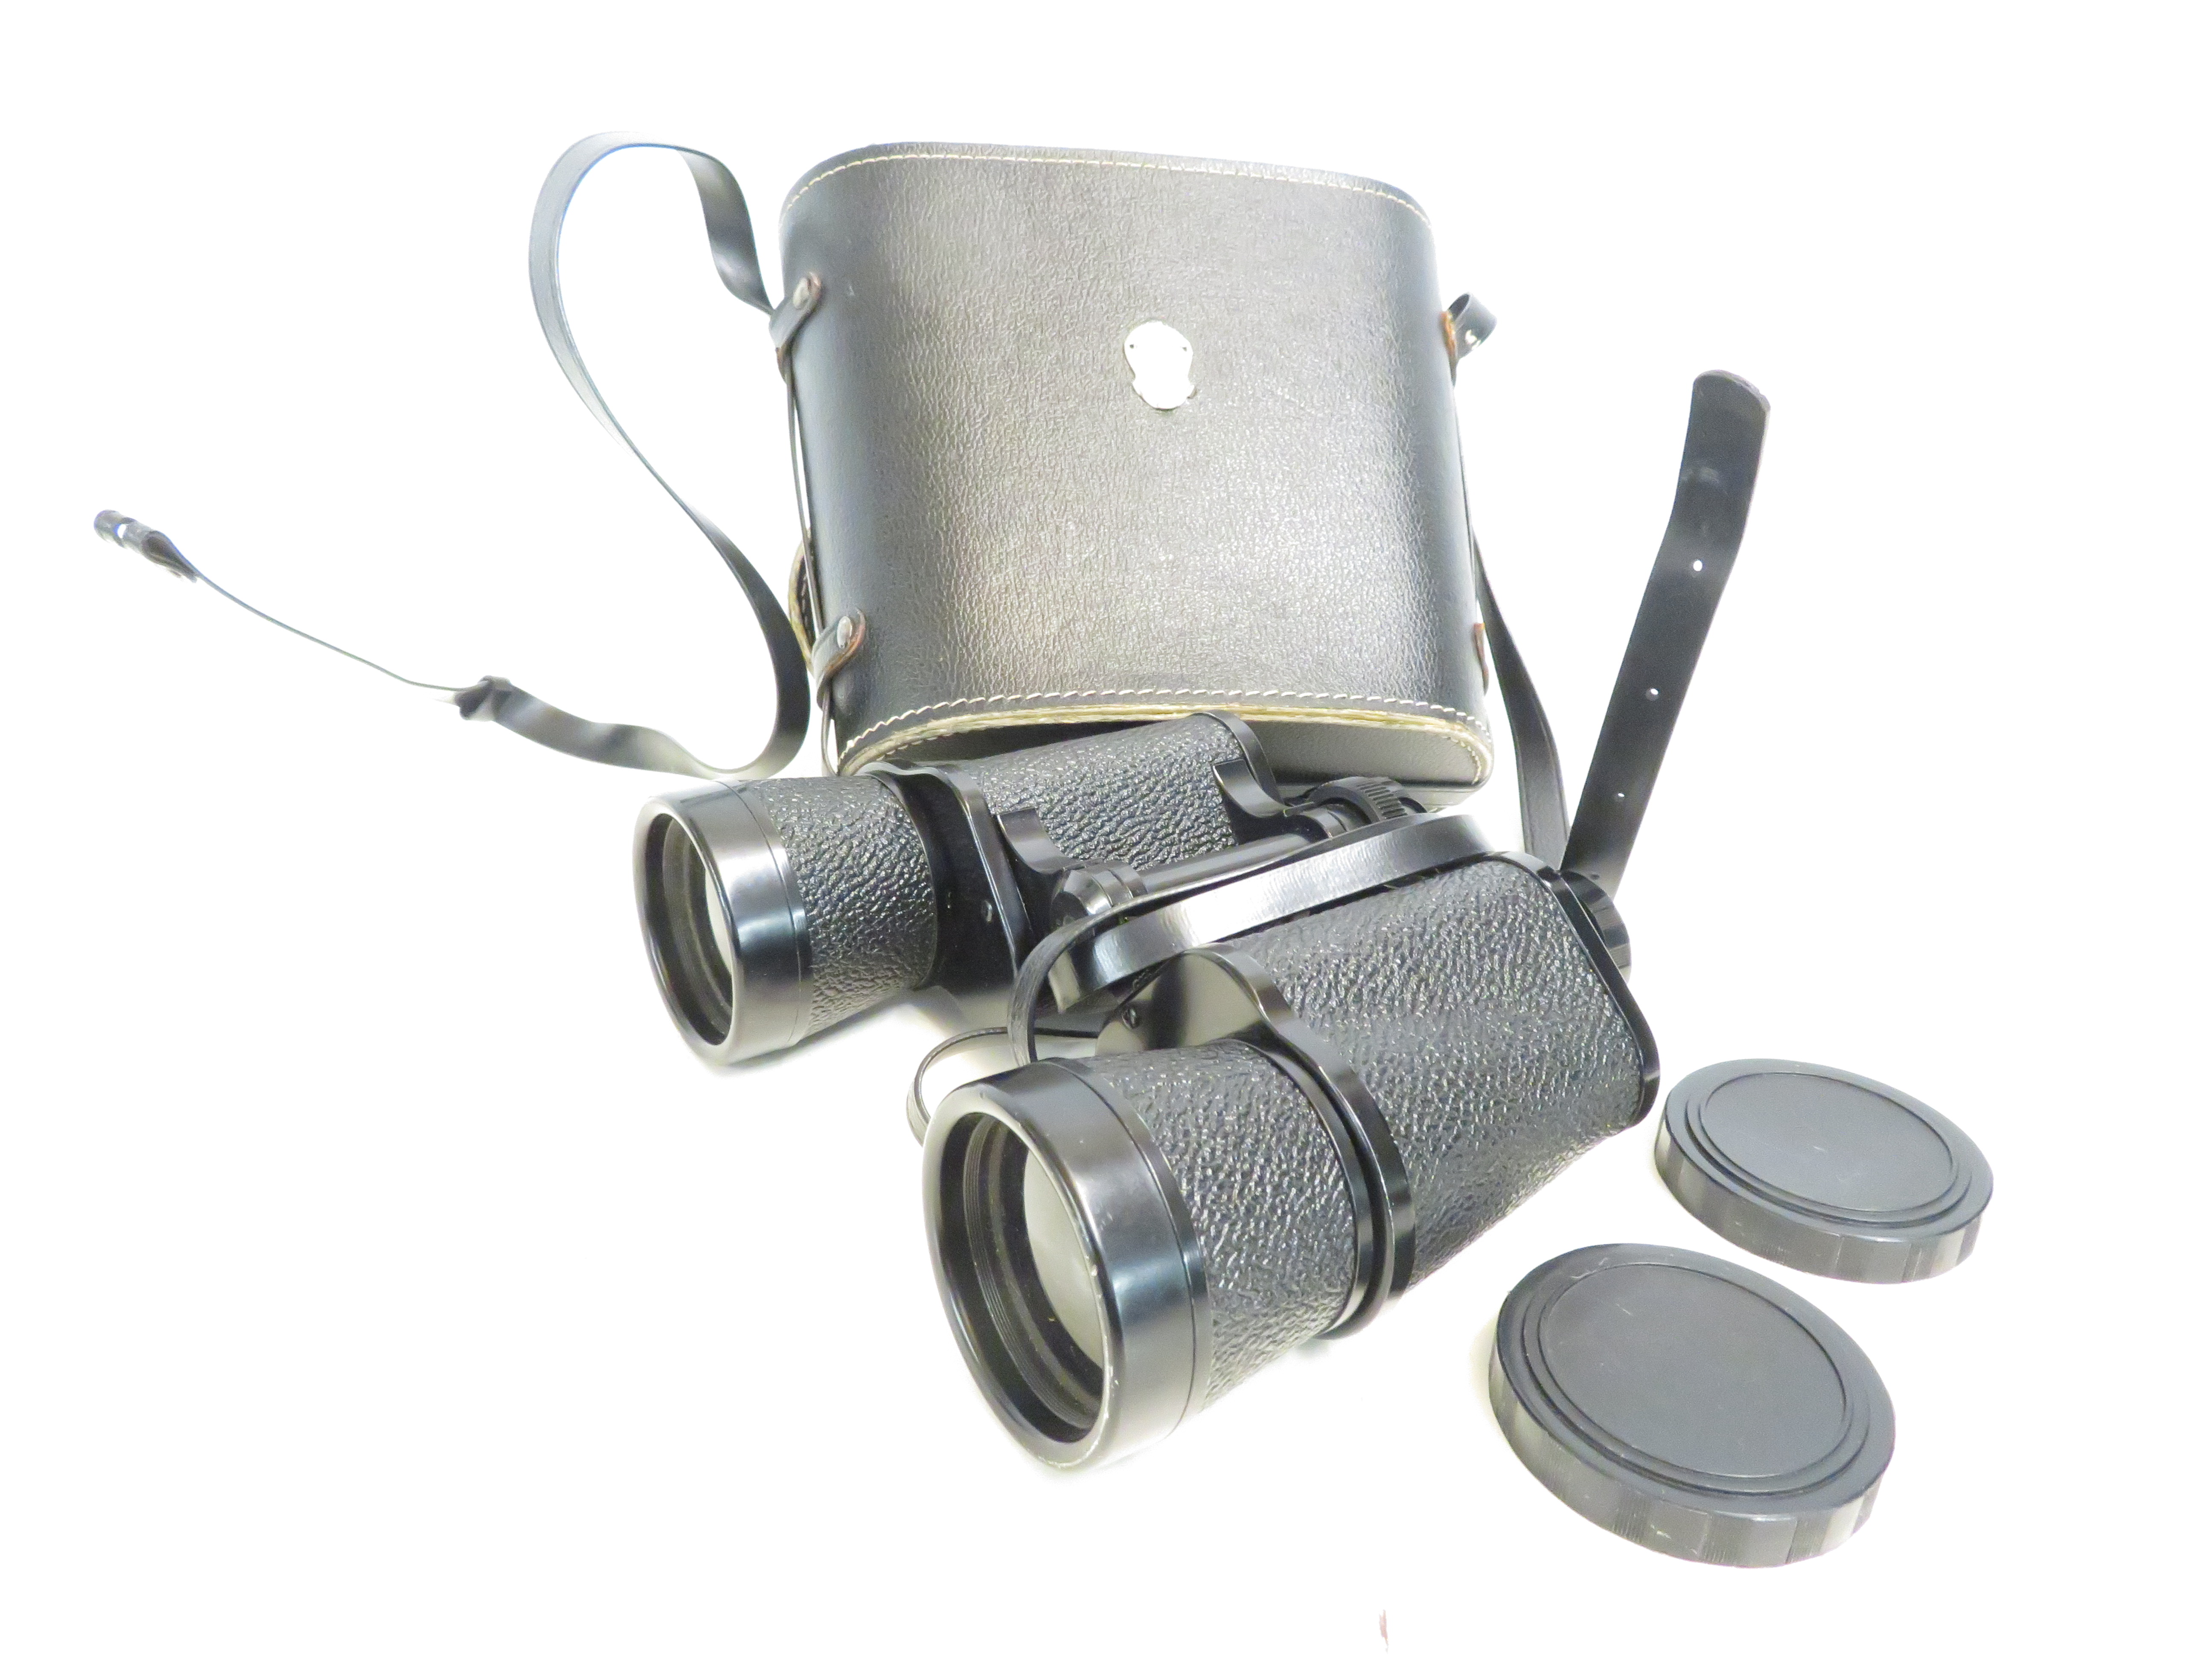 Pair of Kent binoculars & case